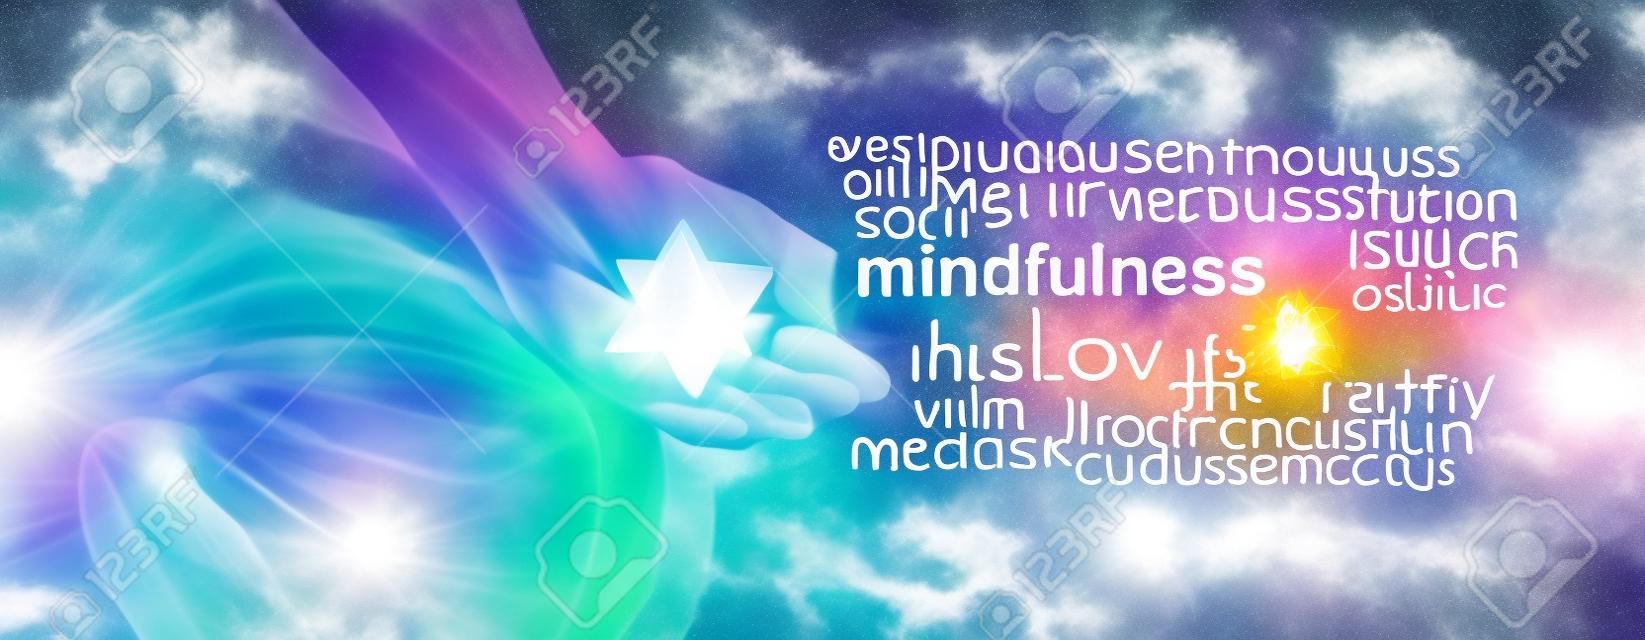 Mot Mindfulness méditation Nuage bannière - Femme assise en position Lotus sur le côté gauche avec le streaming de la lumière du soleil en tenant un Méditer cristal Merkabah et un nuage de mot pleine conscience sur le côté droit